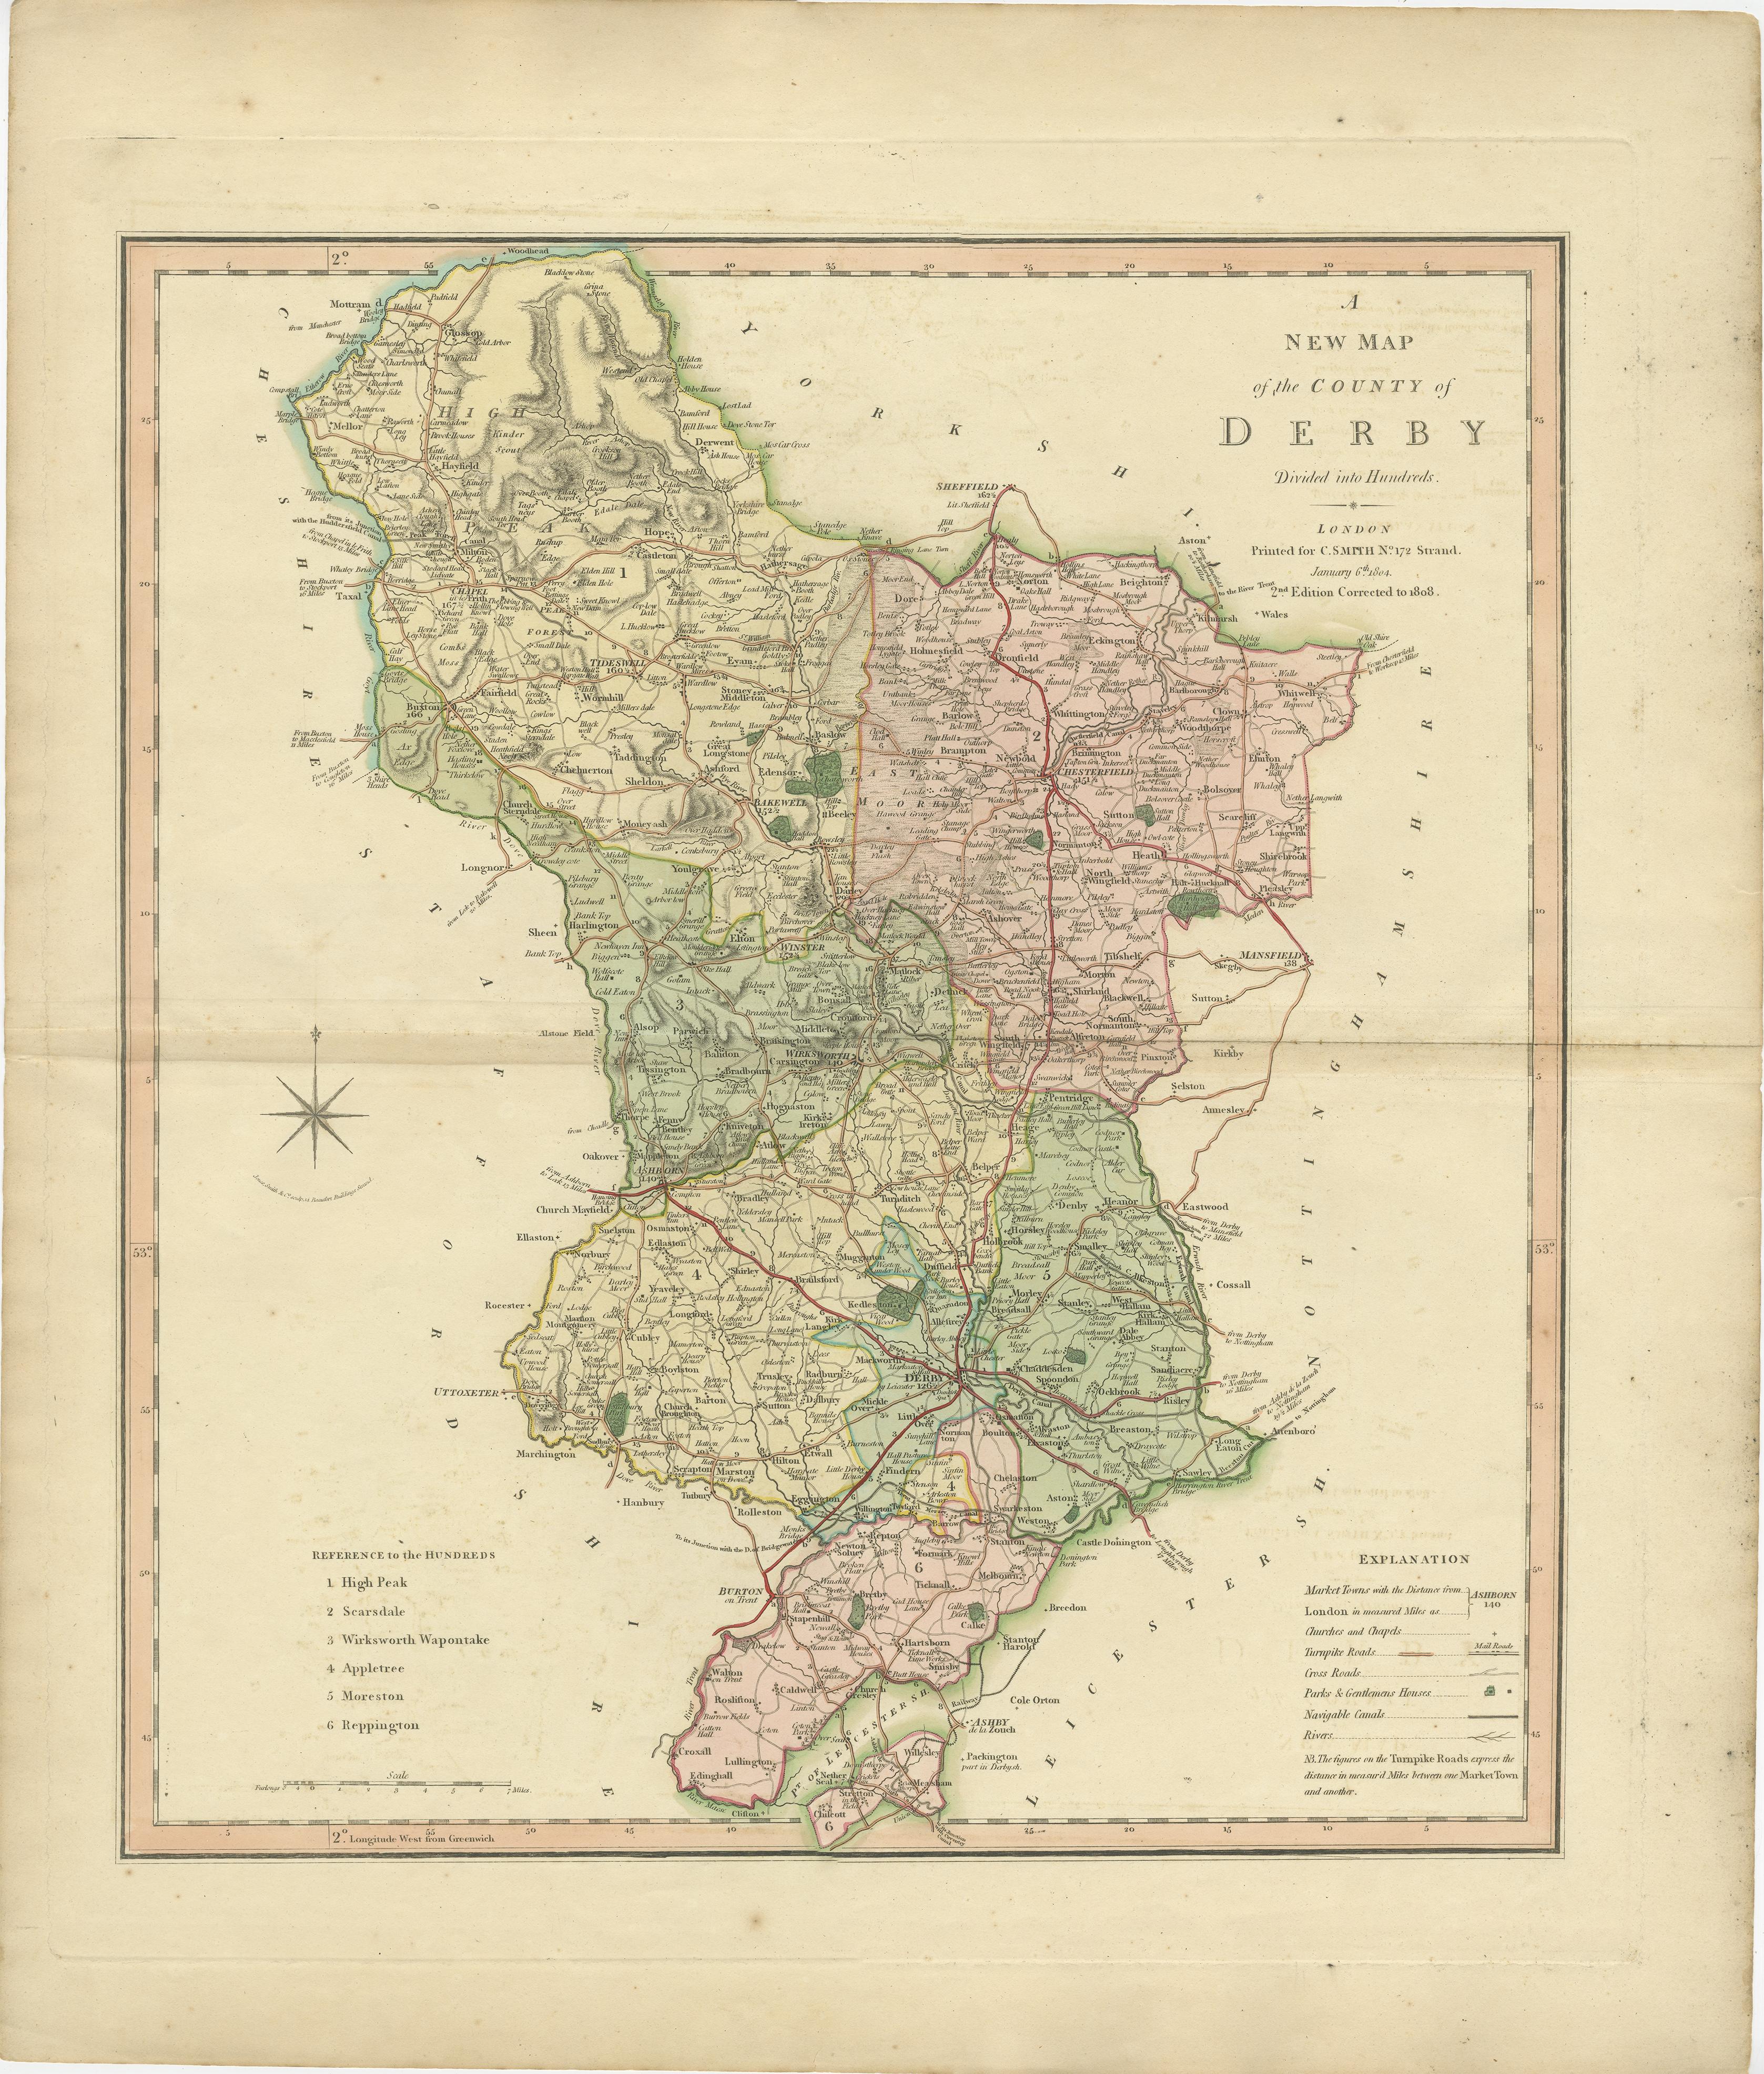 Carte de comté ancienne du Derbyshire publiée pour la première fois vers 1800. Les villages, villes et villages illustrés comprennent Chesterfield, Wirksworth, Derby et Stanton.

Charles Smith était un cartographe travaillant à Londres aux